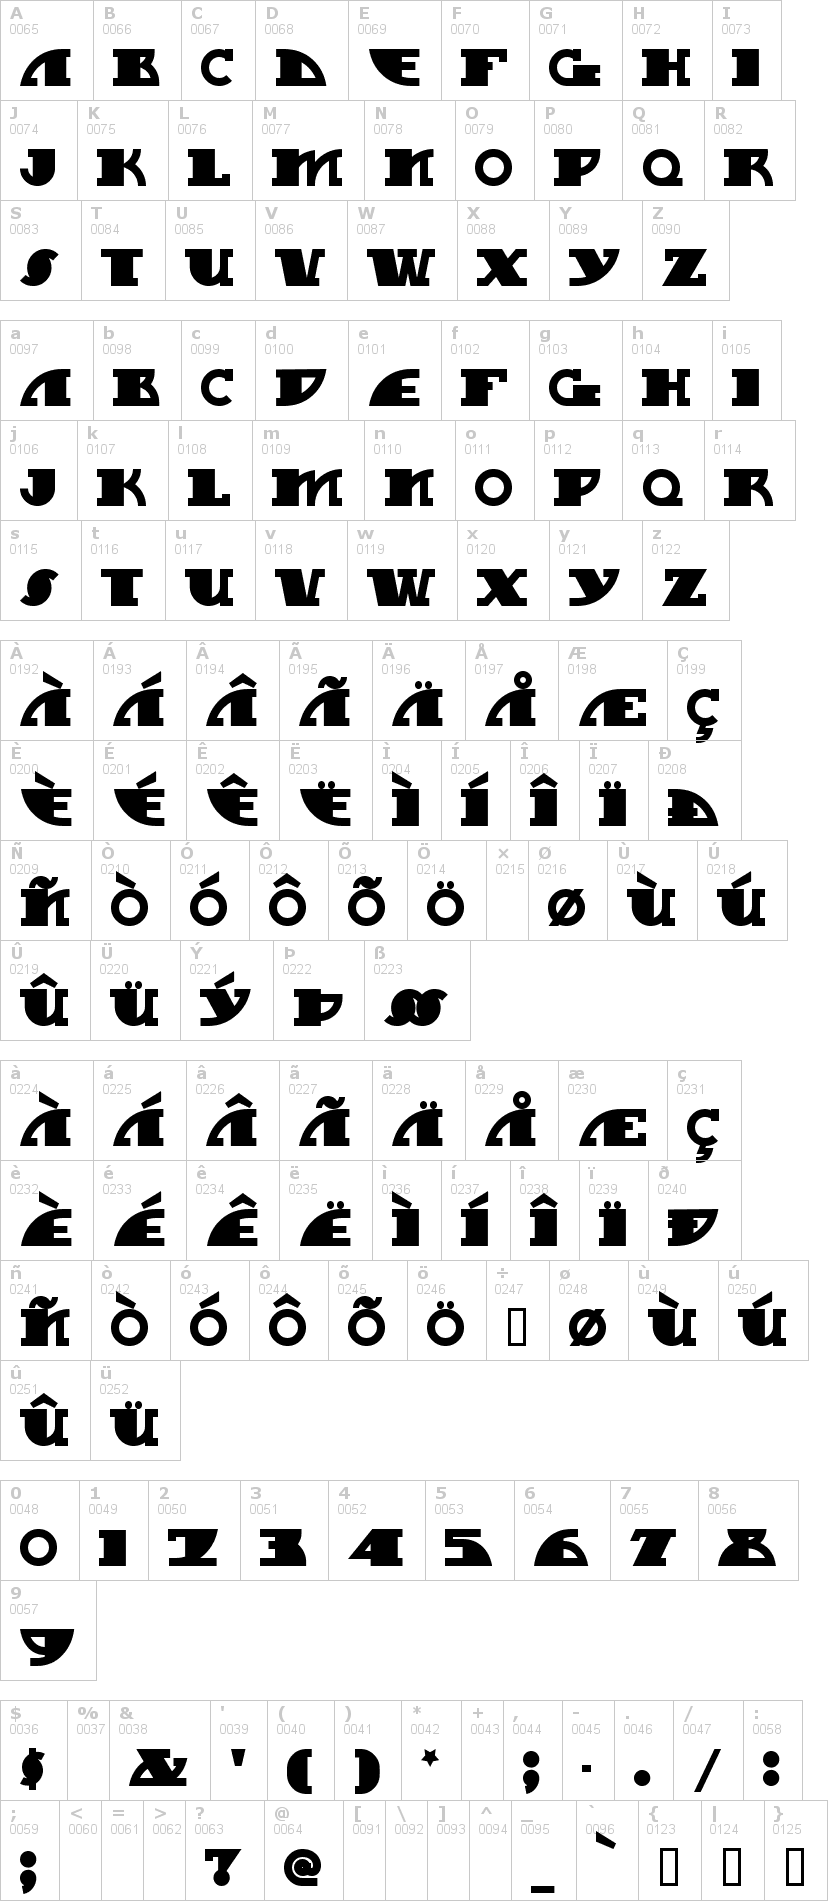 Lettere dell'alfabeto del font mygalswoopy-nf con le quali è possibile realizzare adesivi prespaziati